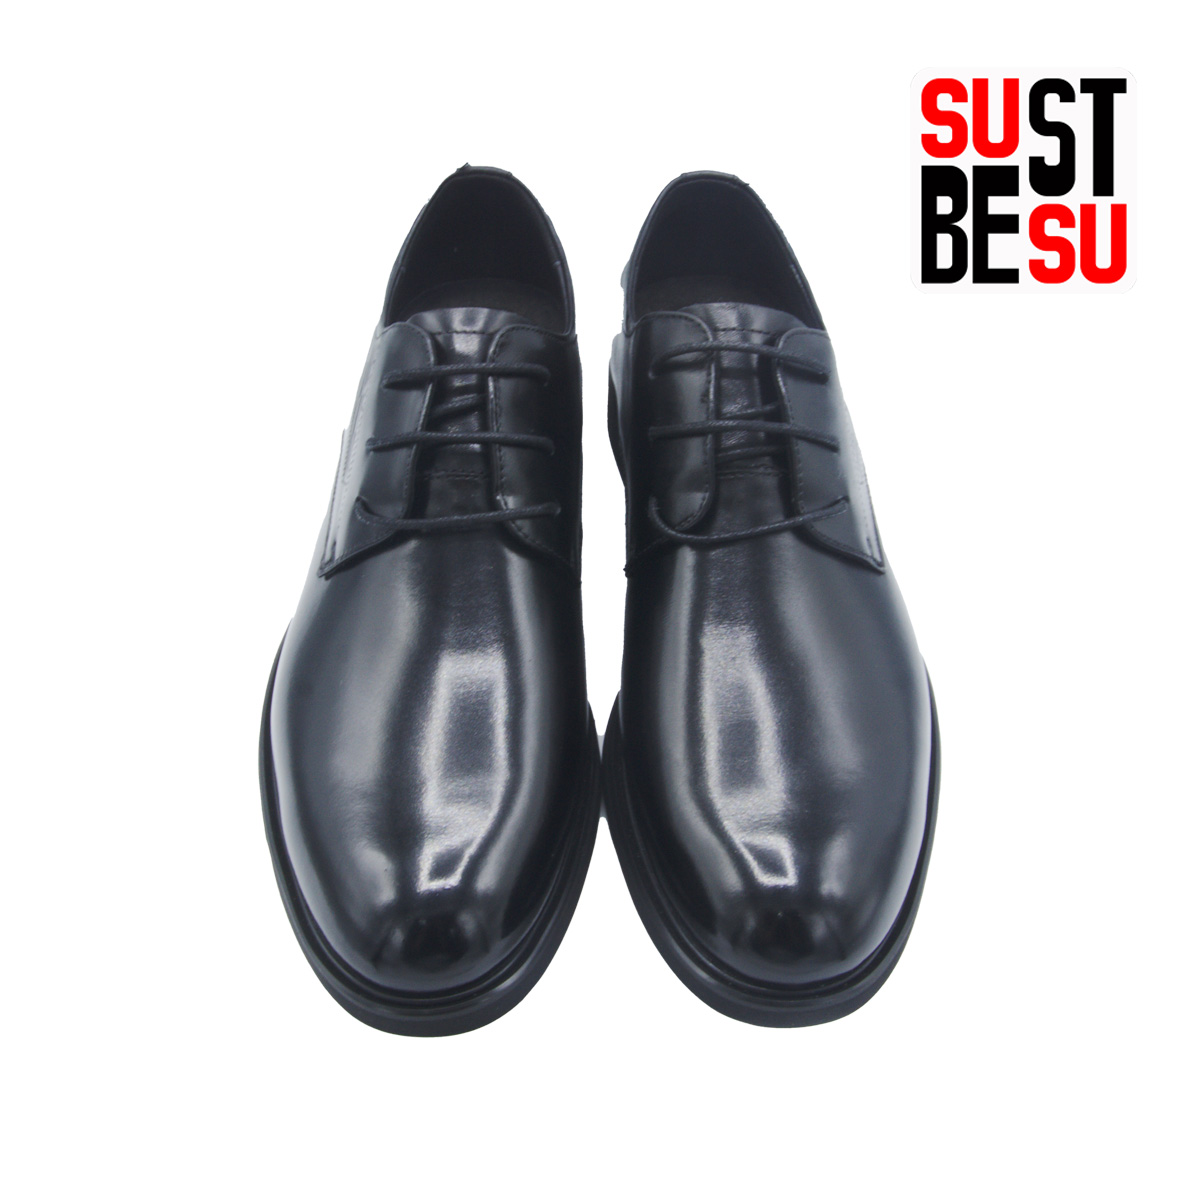 giầy công sở nam SUBESTSU 824-6027 màu đen